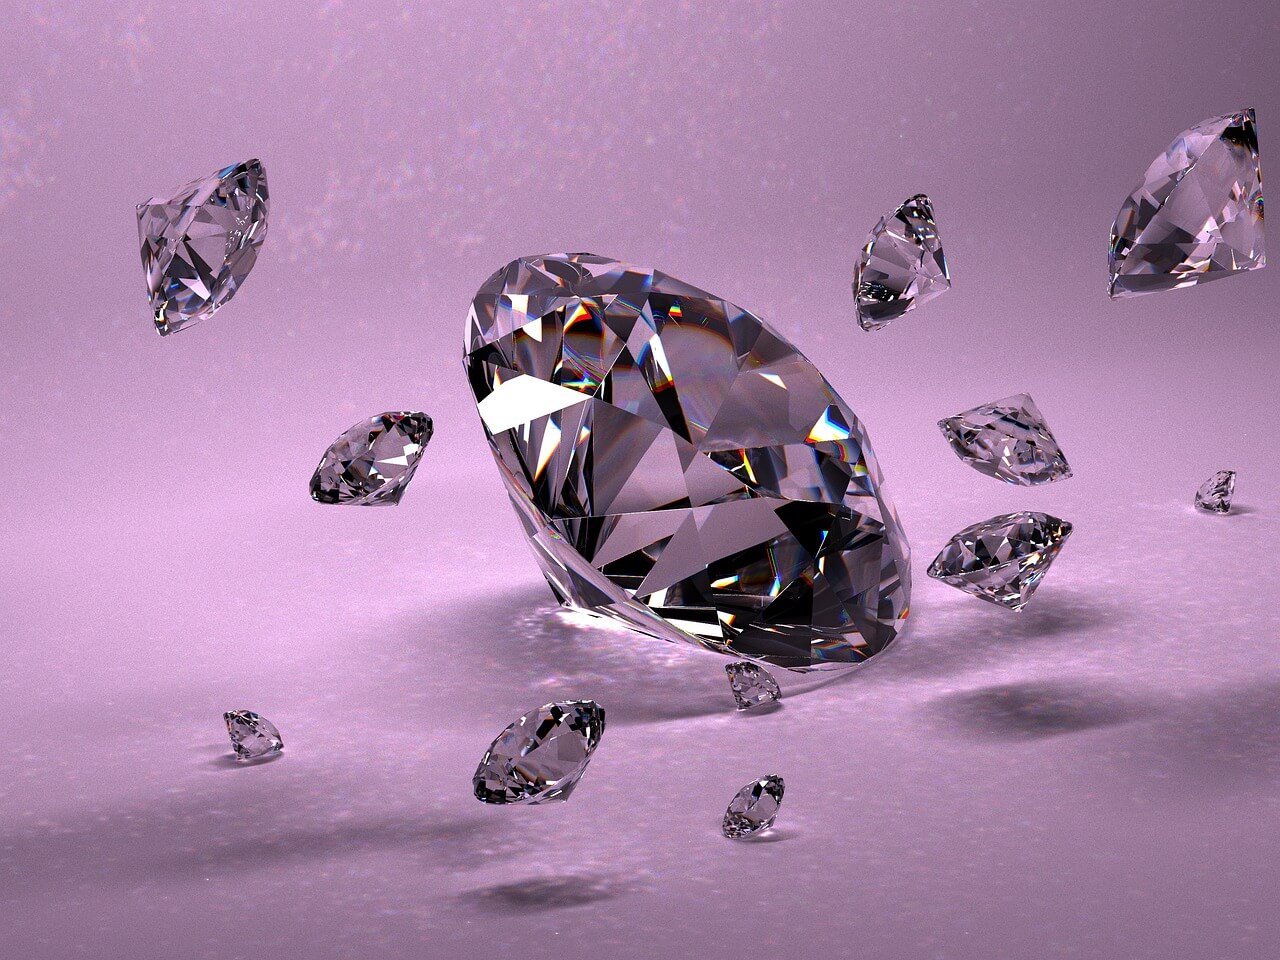 大きなダイヤモンドの周りに小さなダイヤモンドが散りばめられている様子